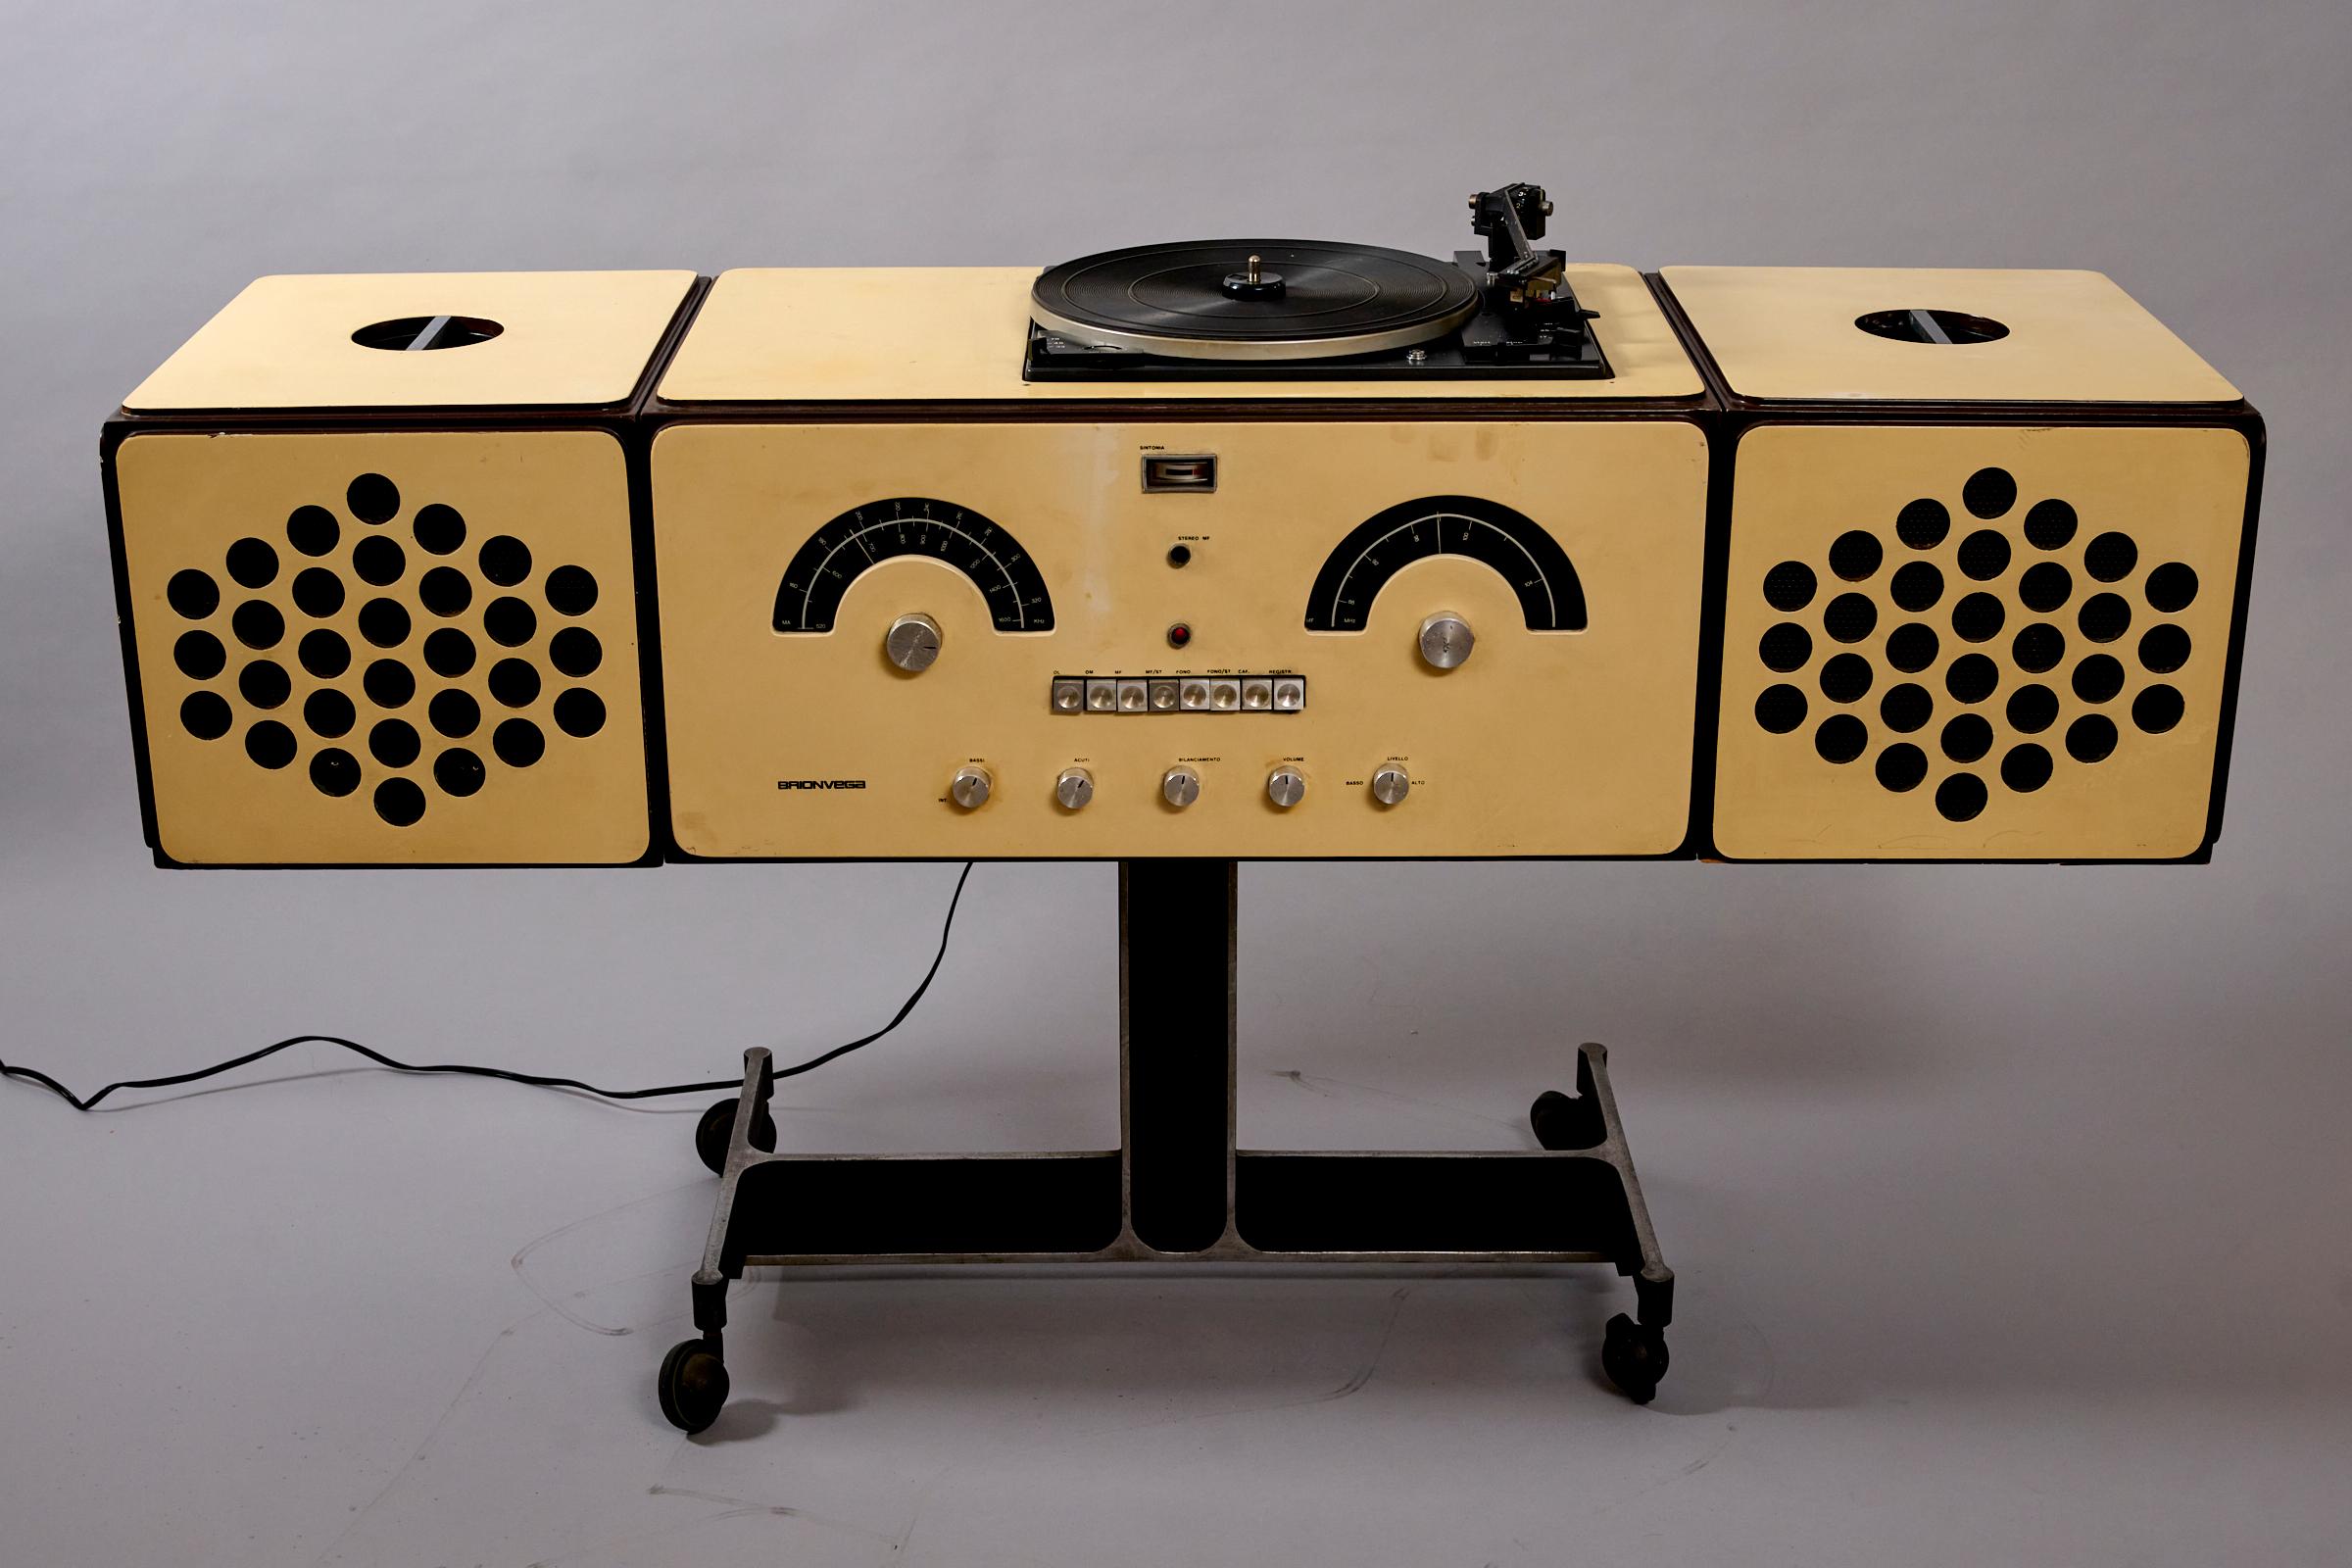 20th Century Original Brionvega record player and radio Rr126 c1965